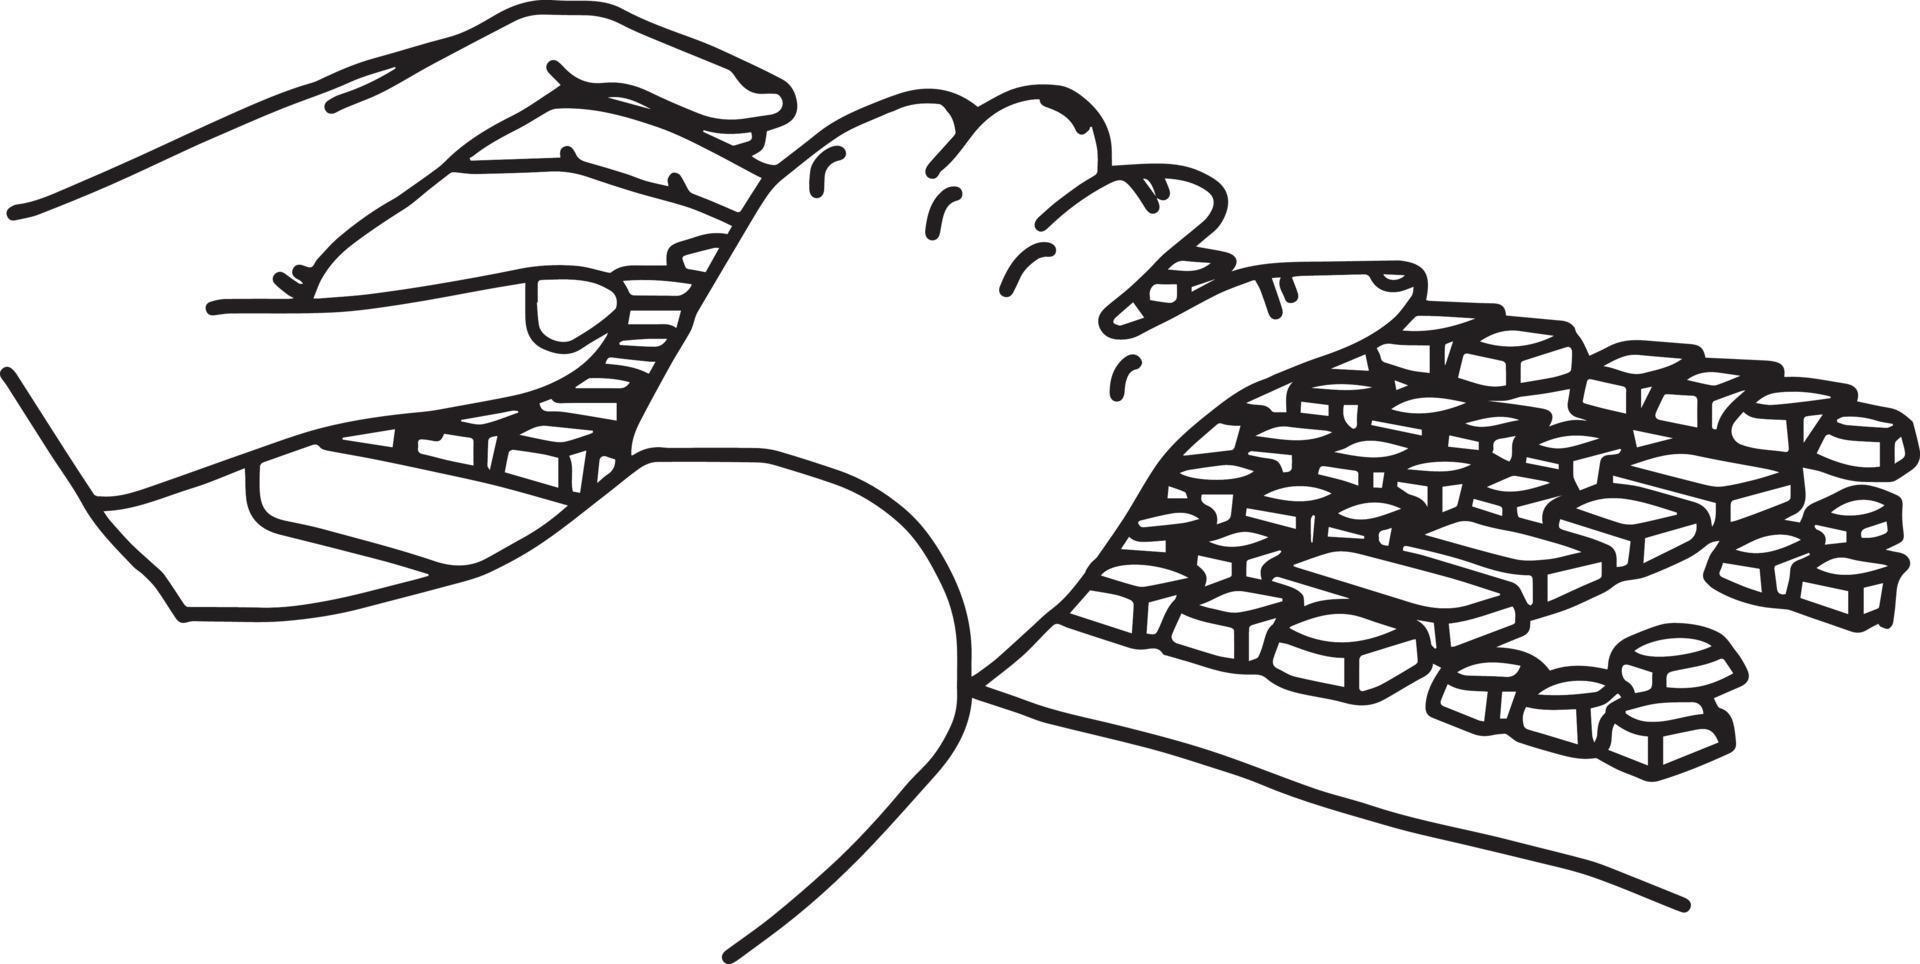 händerna på datorns tangentbord - vektor illustration